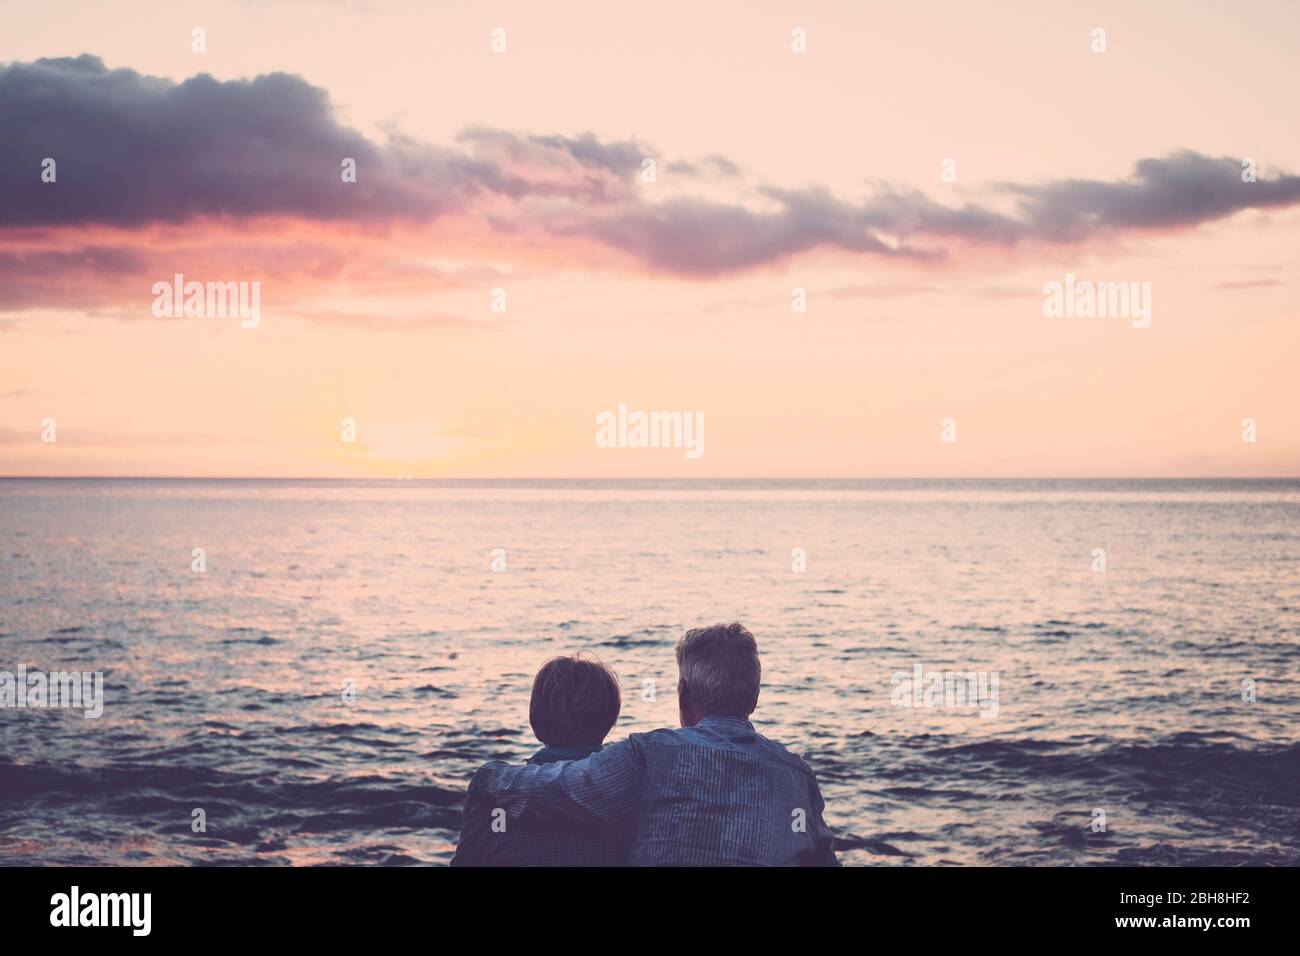 Ältere Paare sitzen und umarmen einander Blick auf das Meer bei Sonnenuntergang entspannend. Konzept von Urlaub, Freizeit, Entspannung. Liebe für kaukasische Erwachsene Menschen zusammen mit Umarmung und Beziehung Lifestyle Outdoor-Konzept Stockfoto